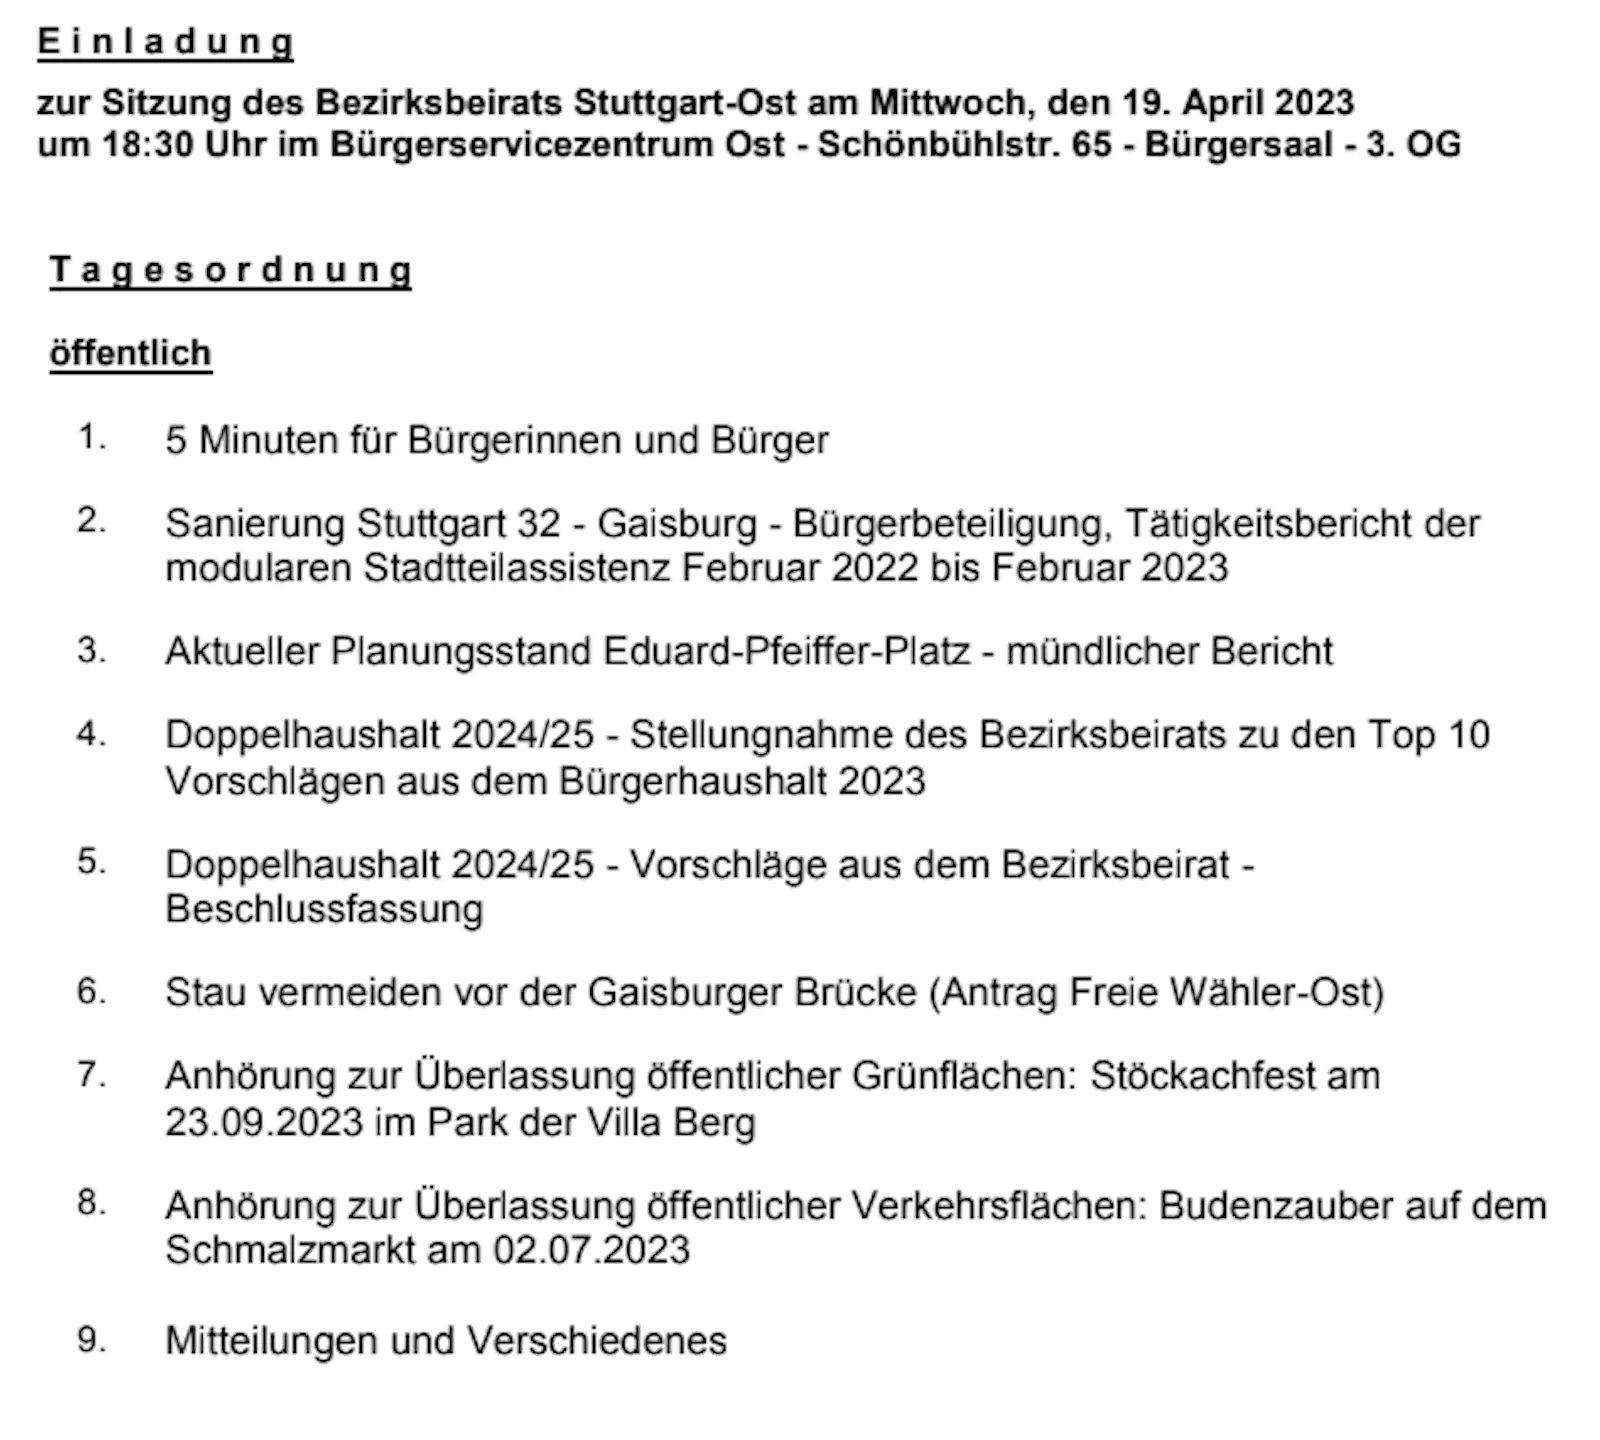 Tagesordnung zur Sitzung des Bezirksbeirats Stuttgart-Ost am 19. April.